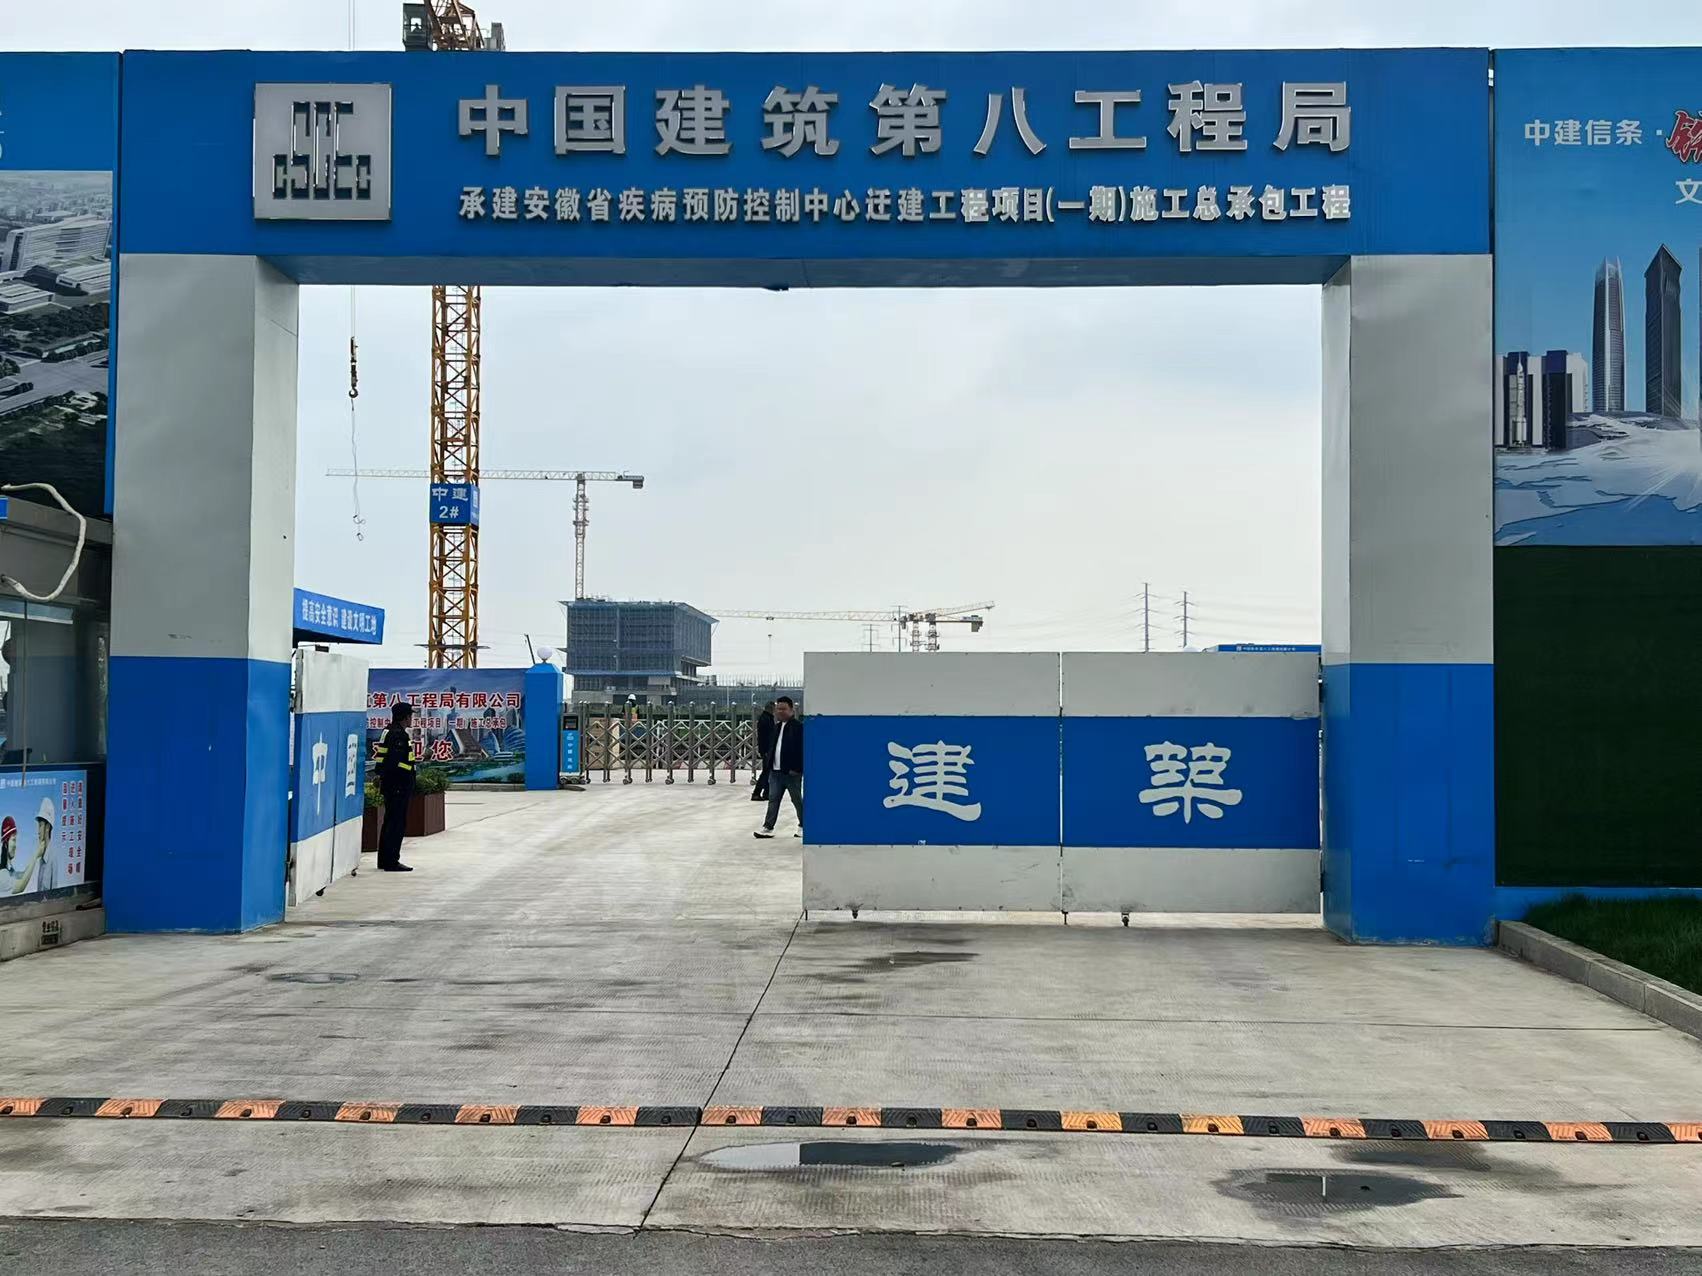 滁州安徽省预防疾病控制中心